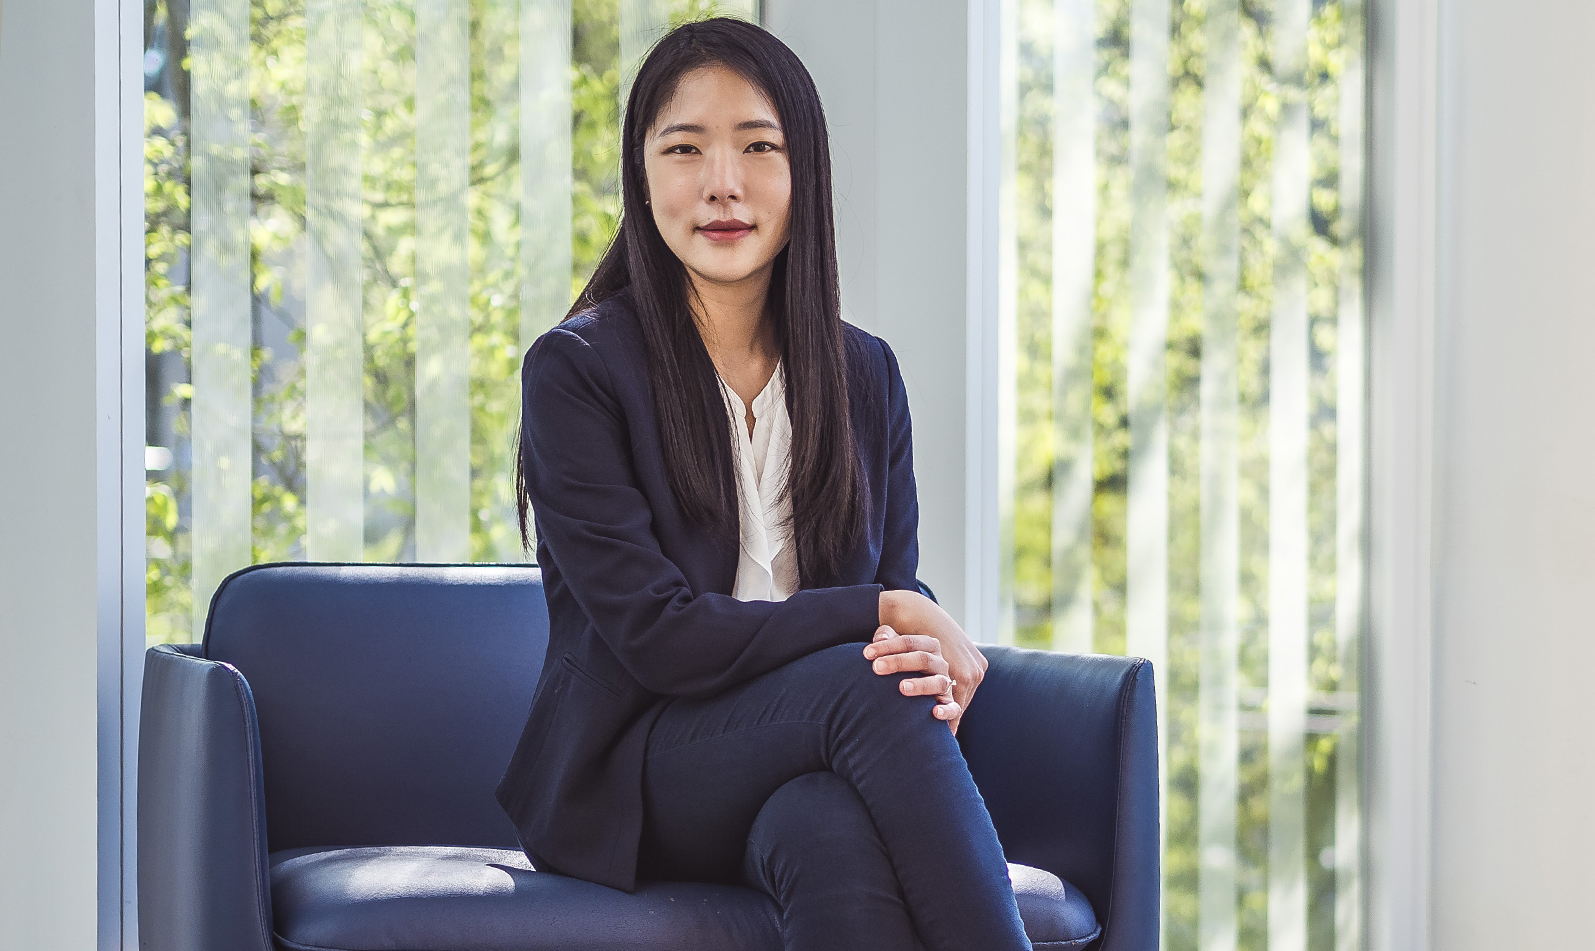 Soojin Lee, PhD '19, Biomedical Engineering | UBC Applied Science